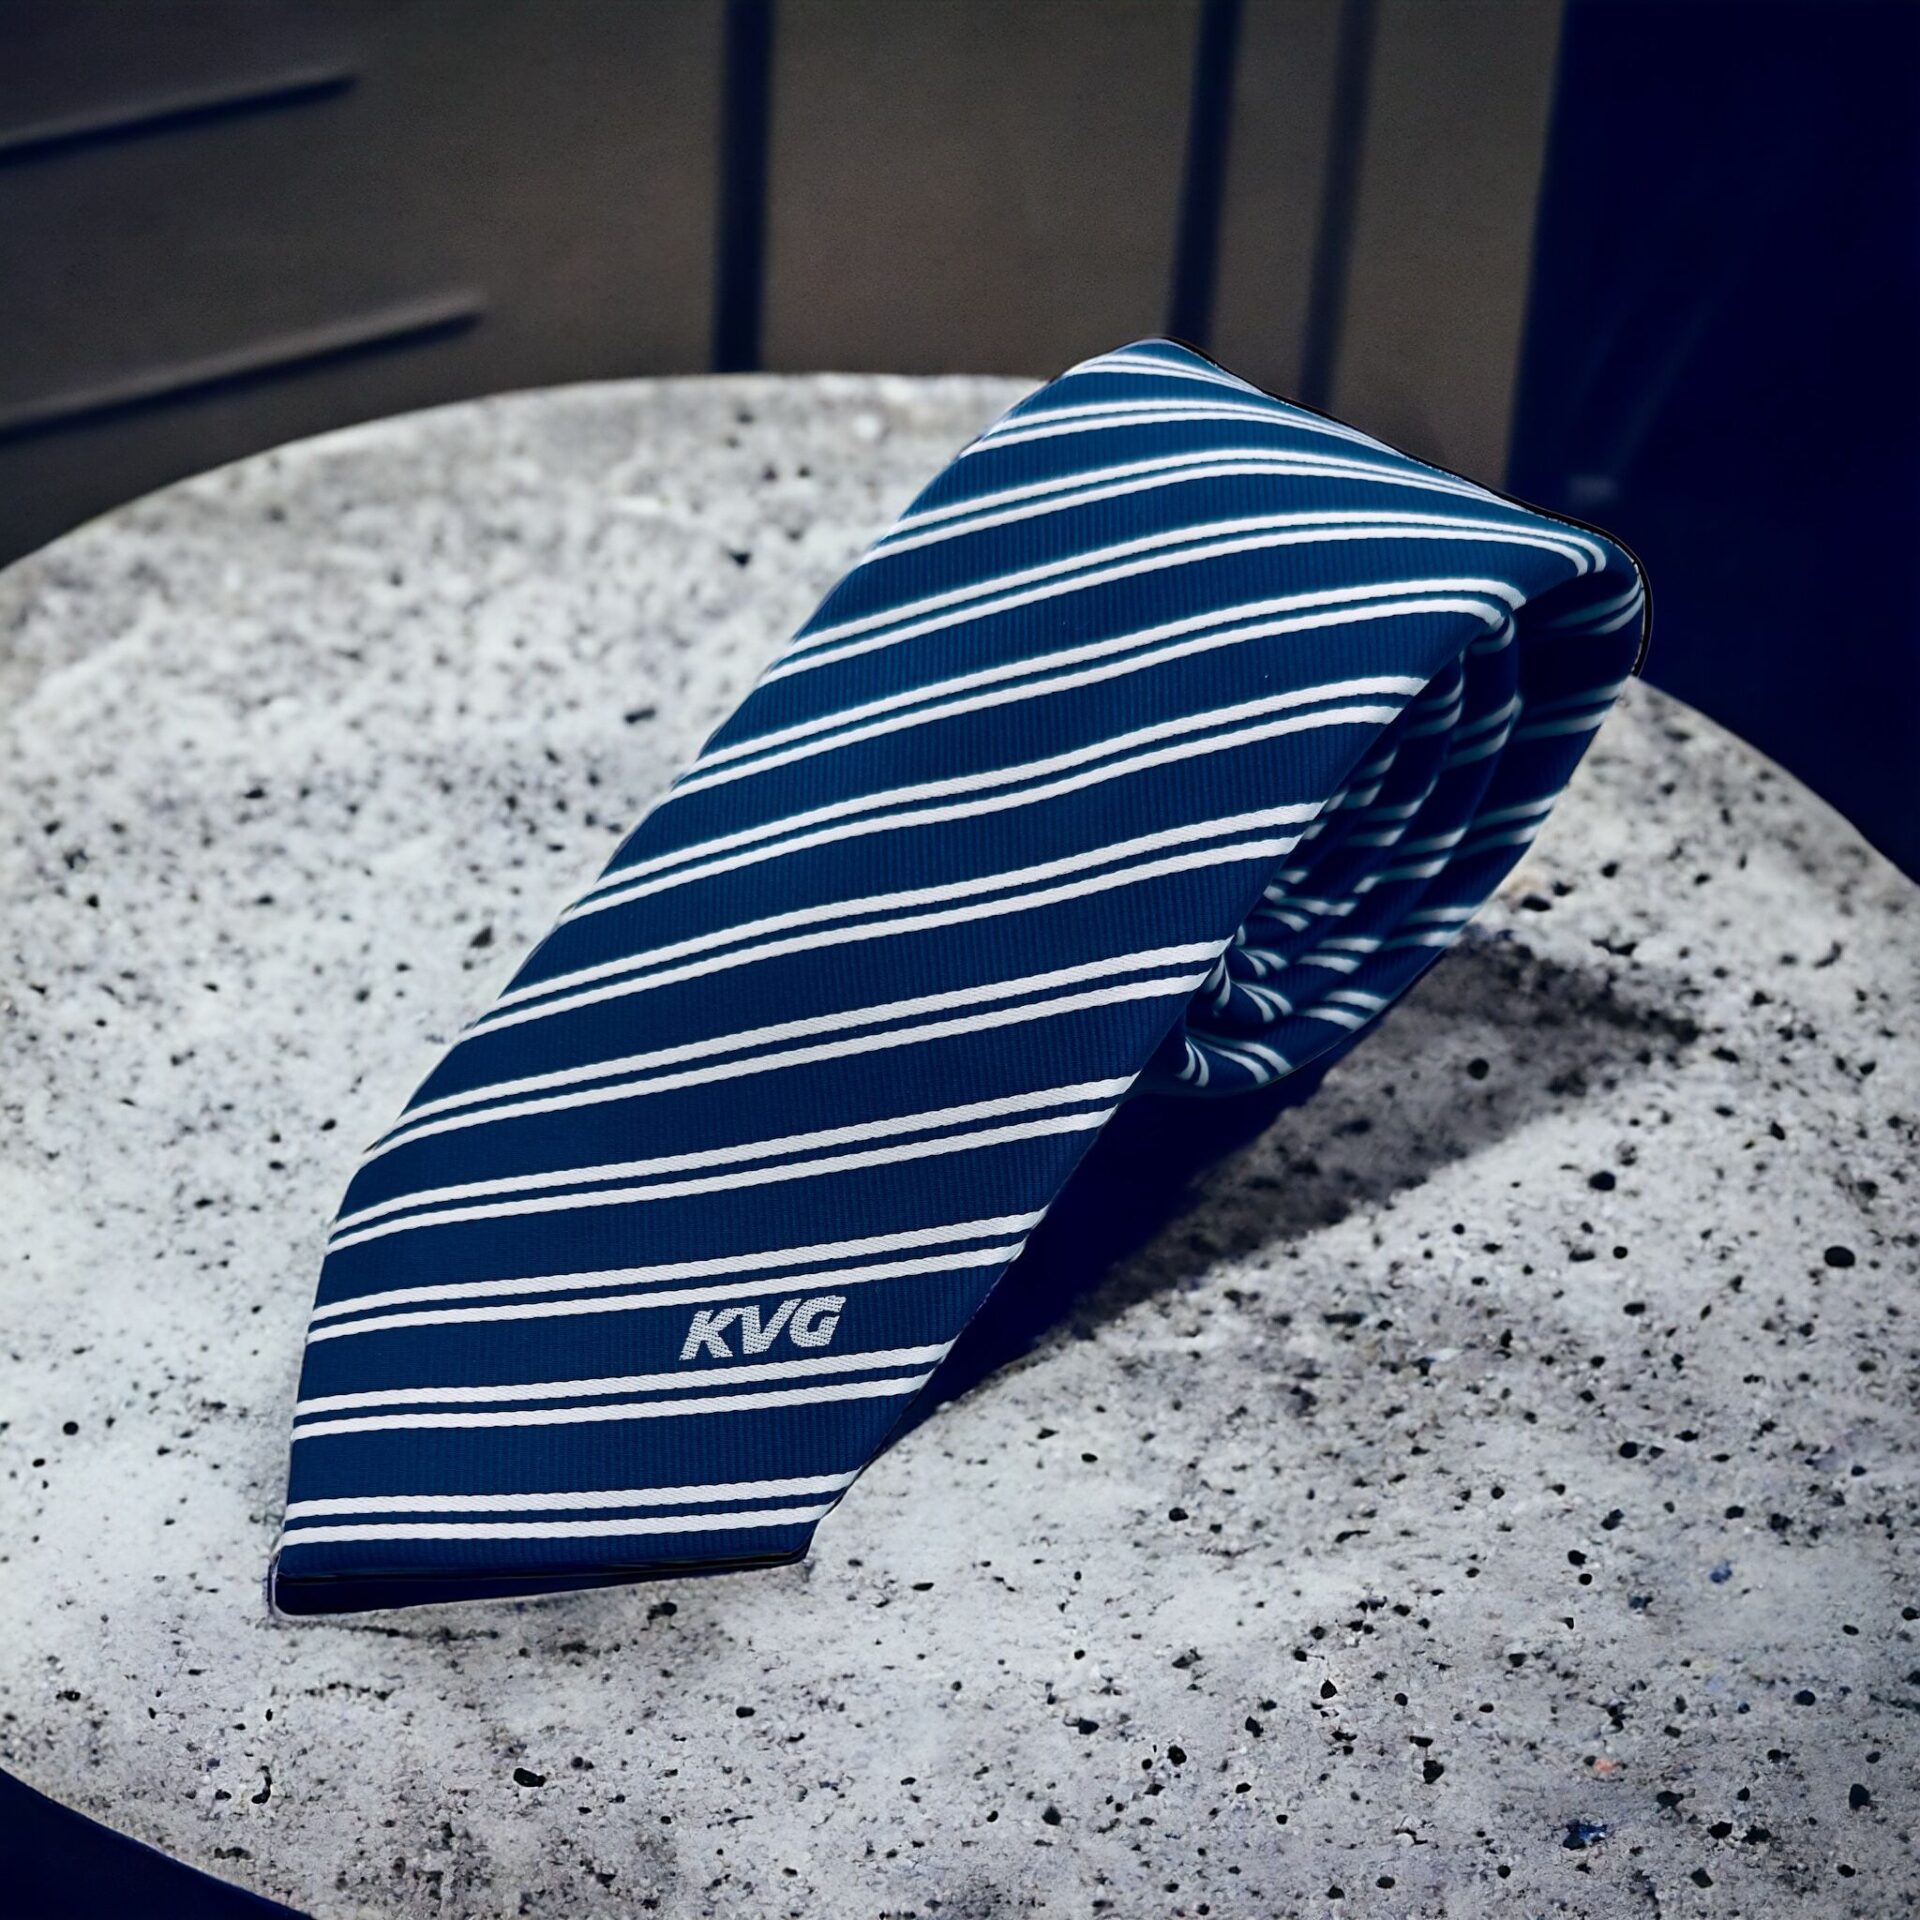 Kvg kravata